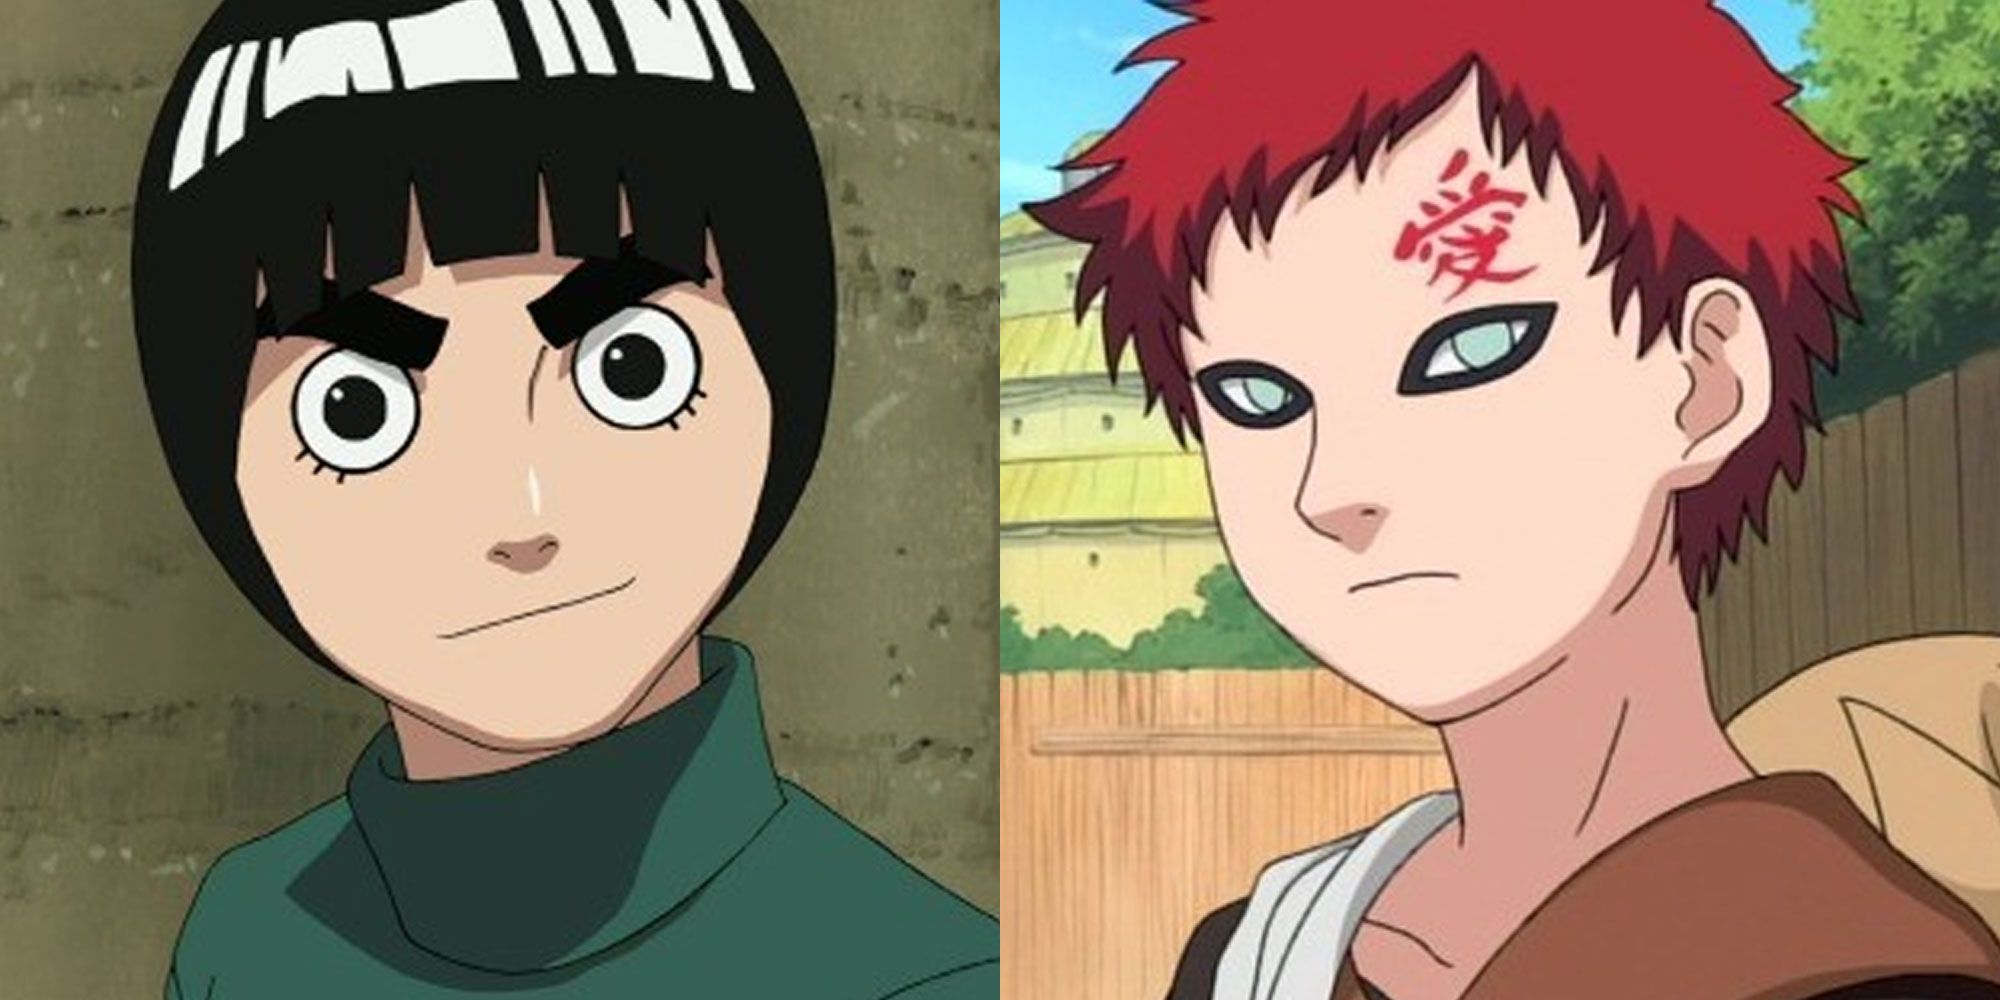 Split image showing Rock Lee and Gaara in Naruto.